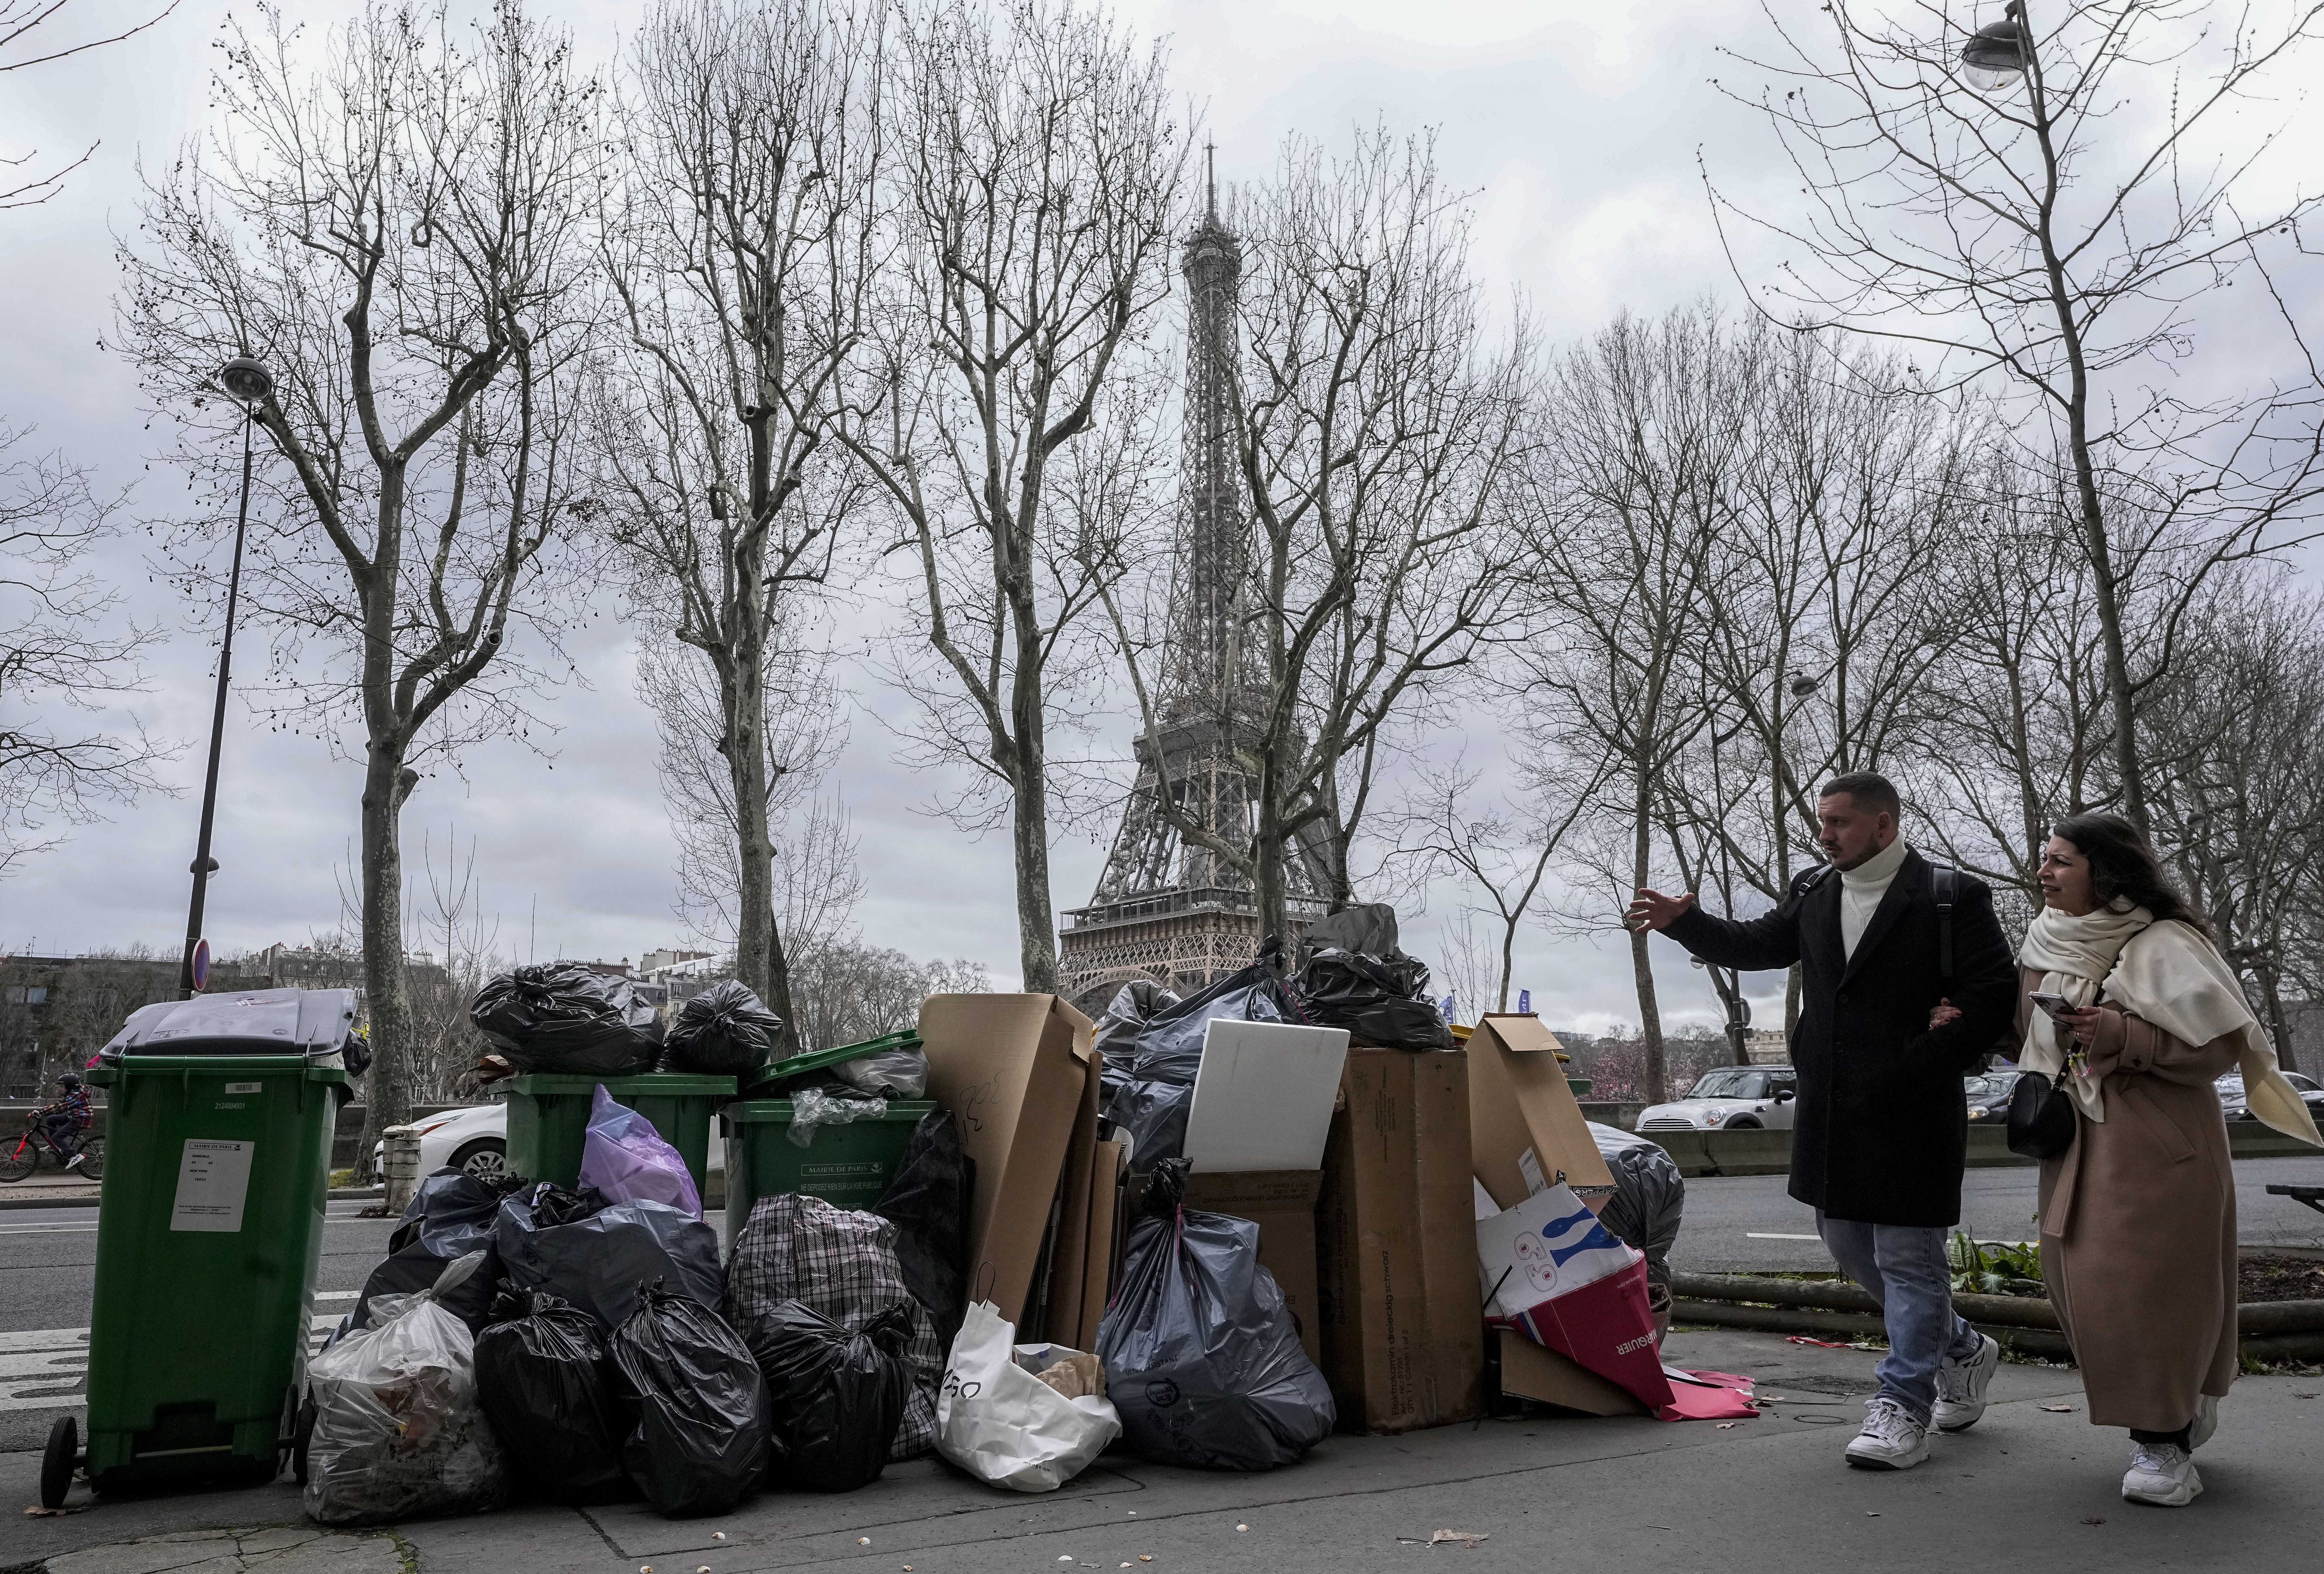 Montañas de basura, la nueva “atracción turística” en París por las huelgas